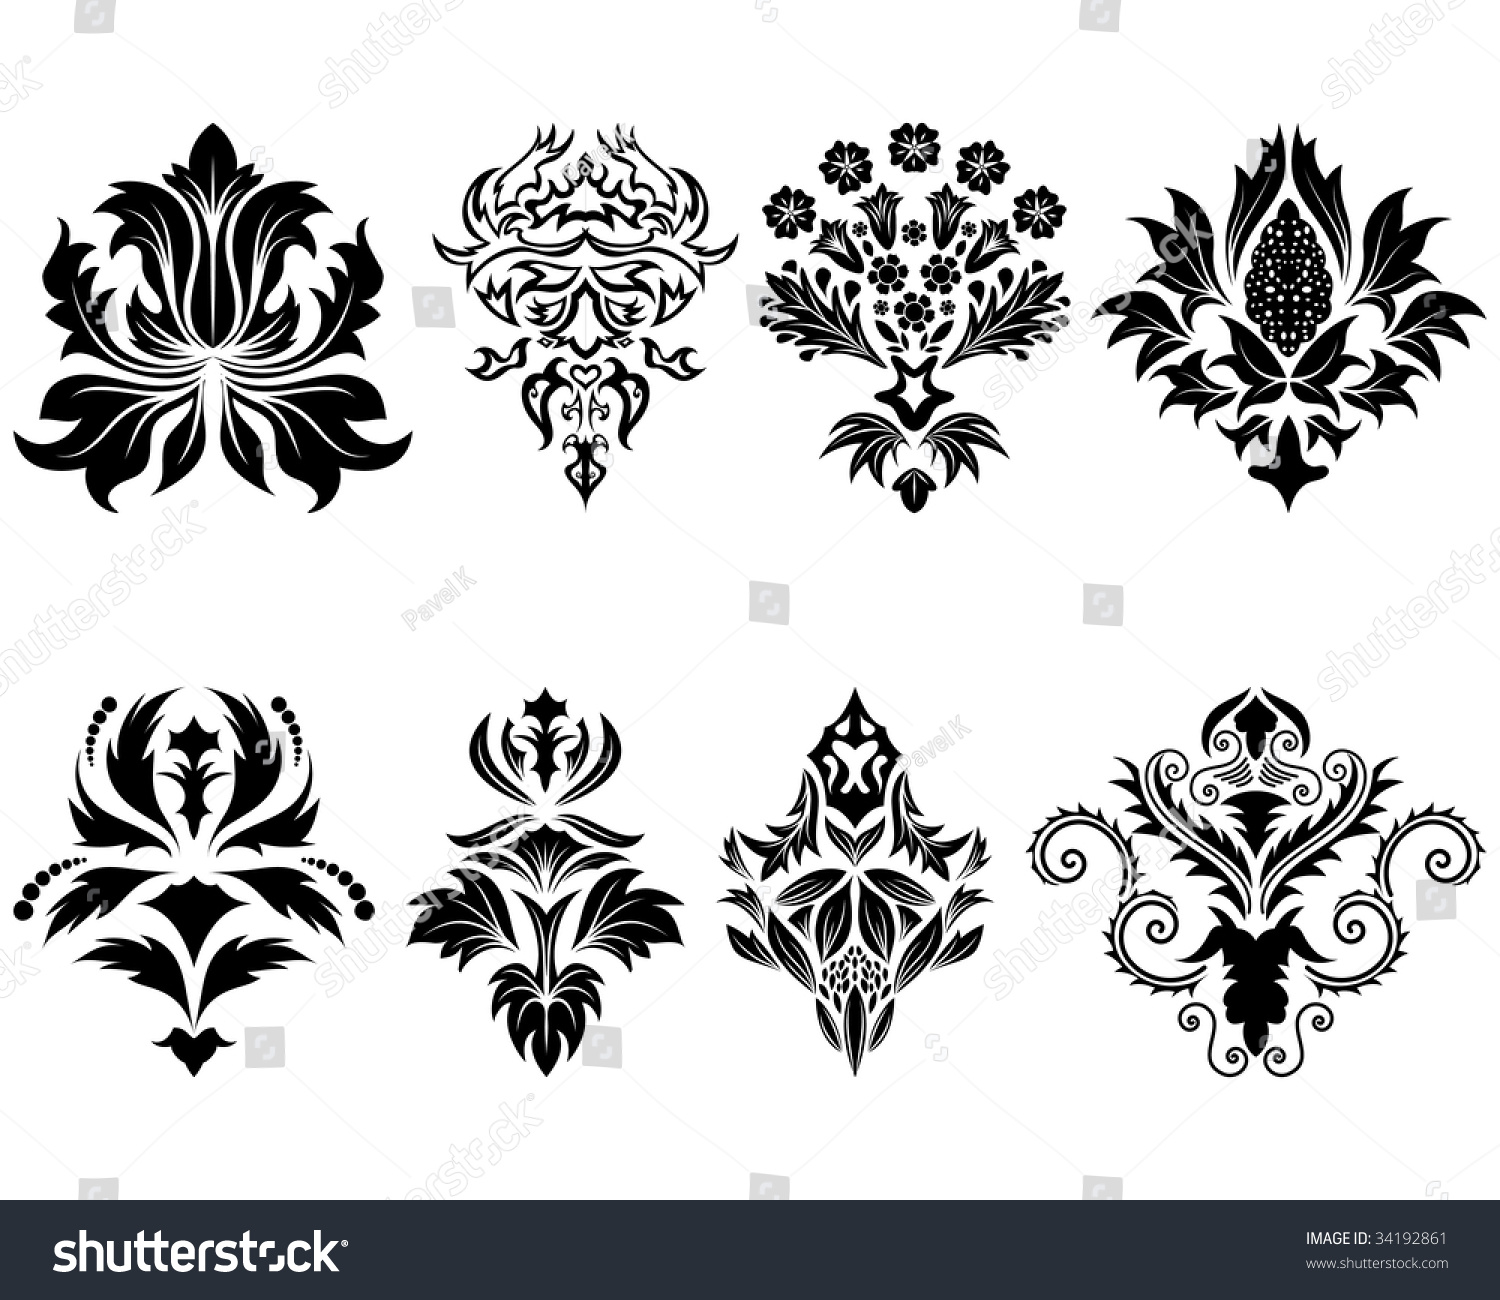 Abstract Damask Emblem Set For Design Use. Vector Illustration ...